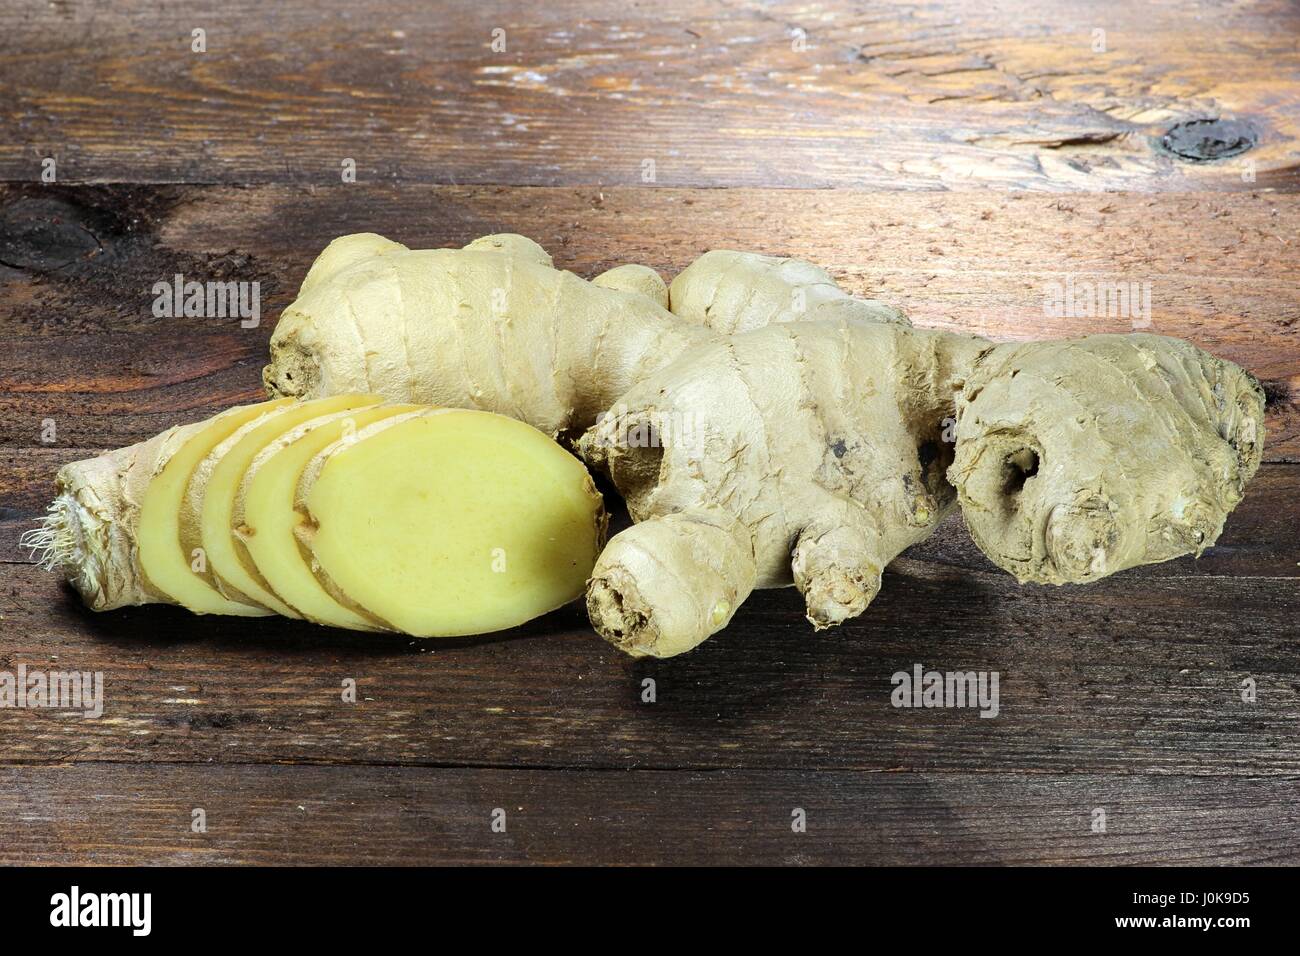 ginger rhizome on wooden background Stock Photo